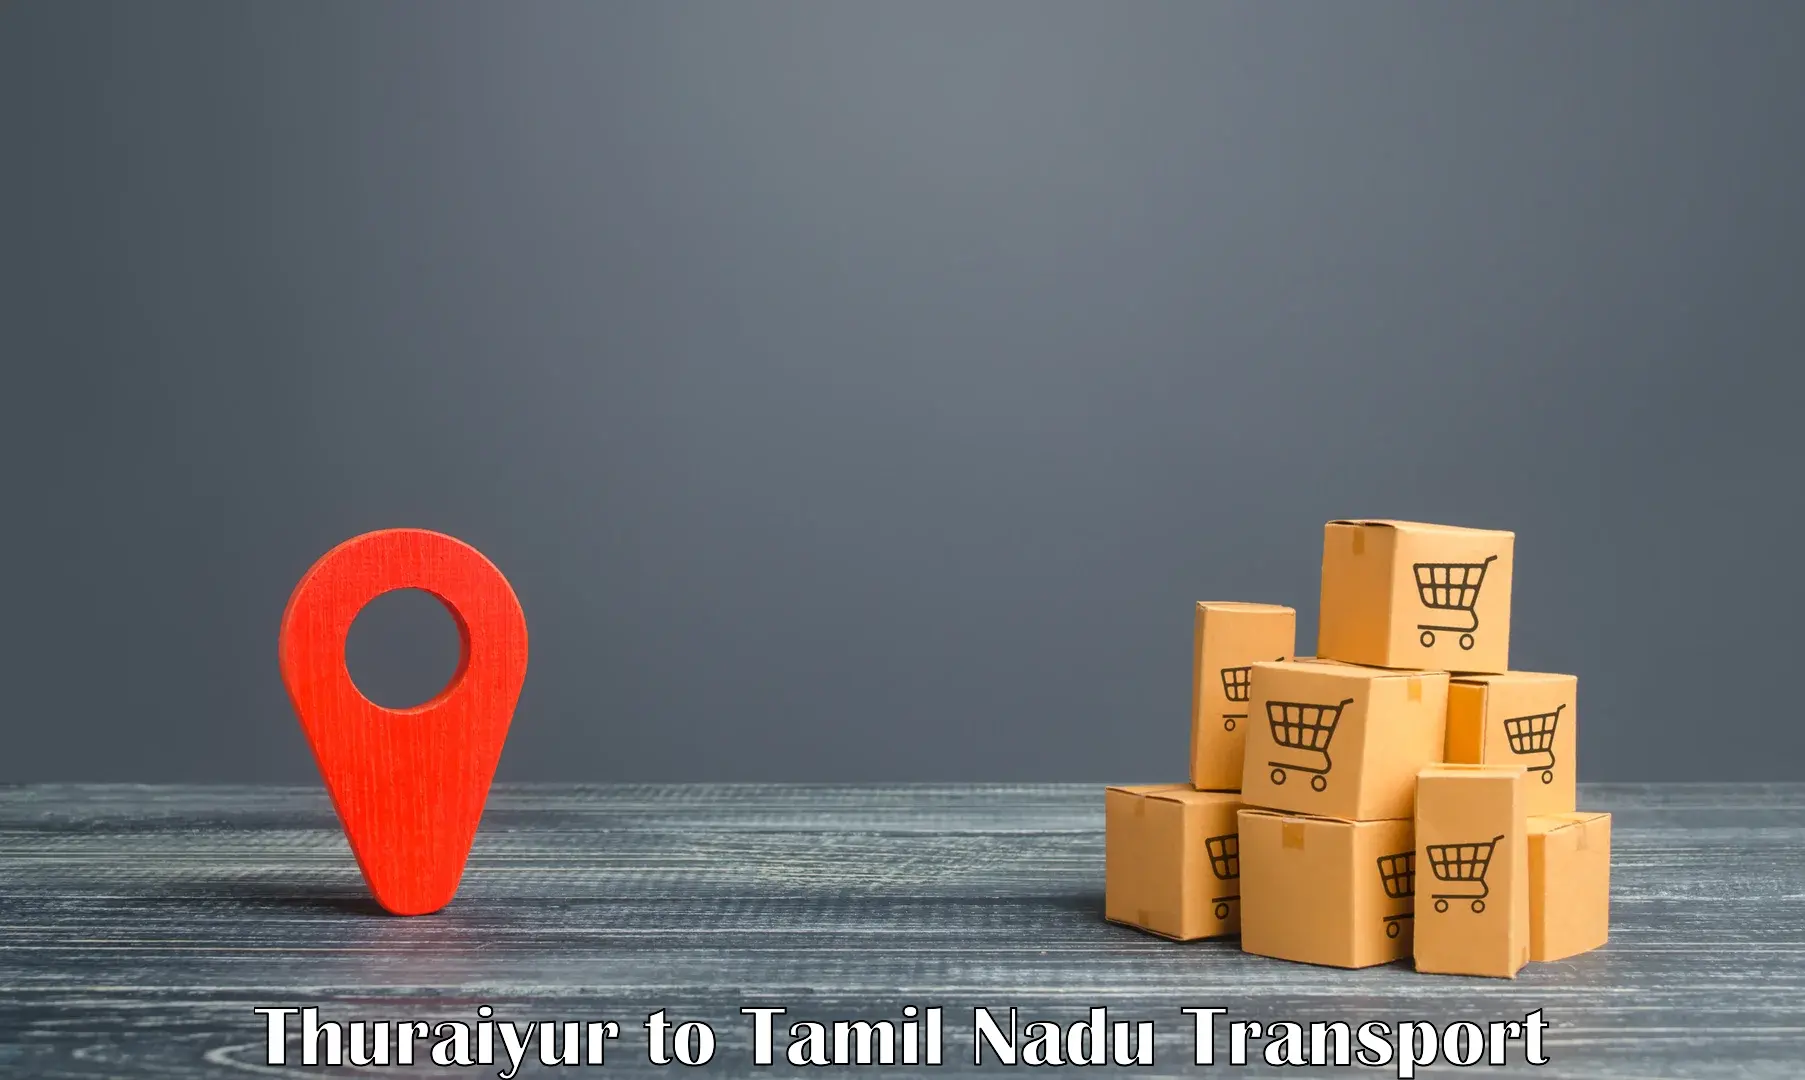 Furniture transport service Thuraiyur to Perambalur